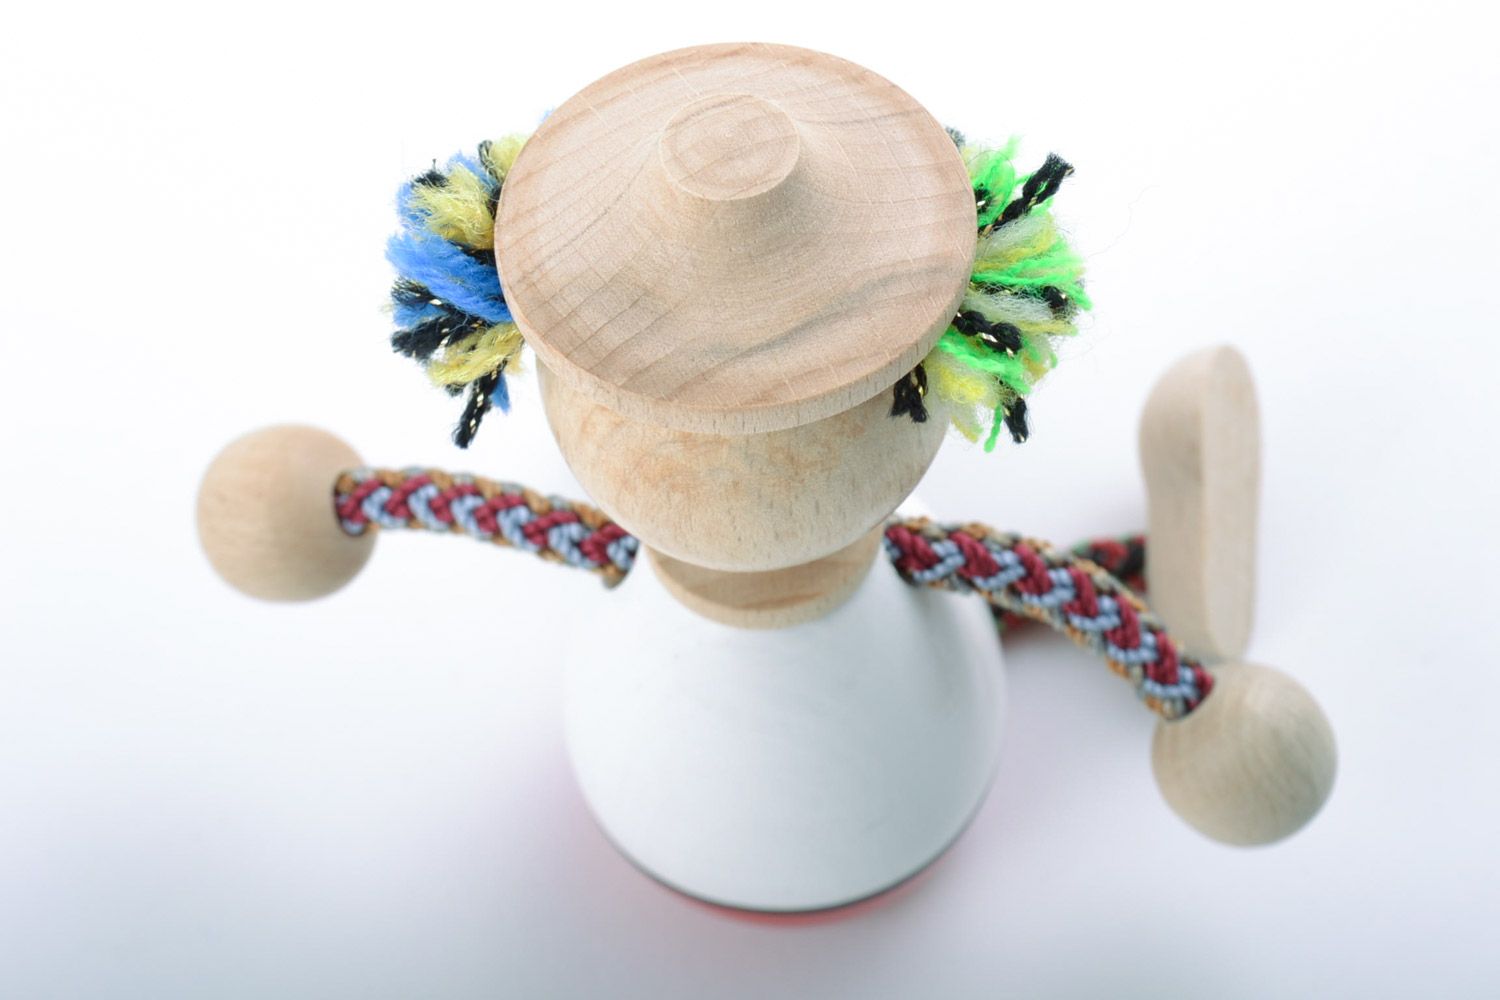 Детская игрушка из дерева расписанная красками ручной работы в виде яркого клоуна фото 5